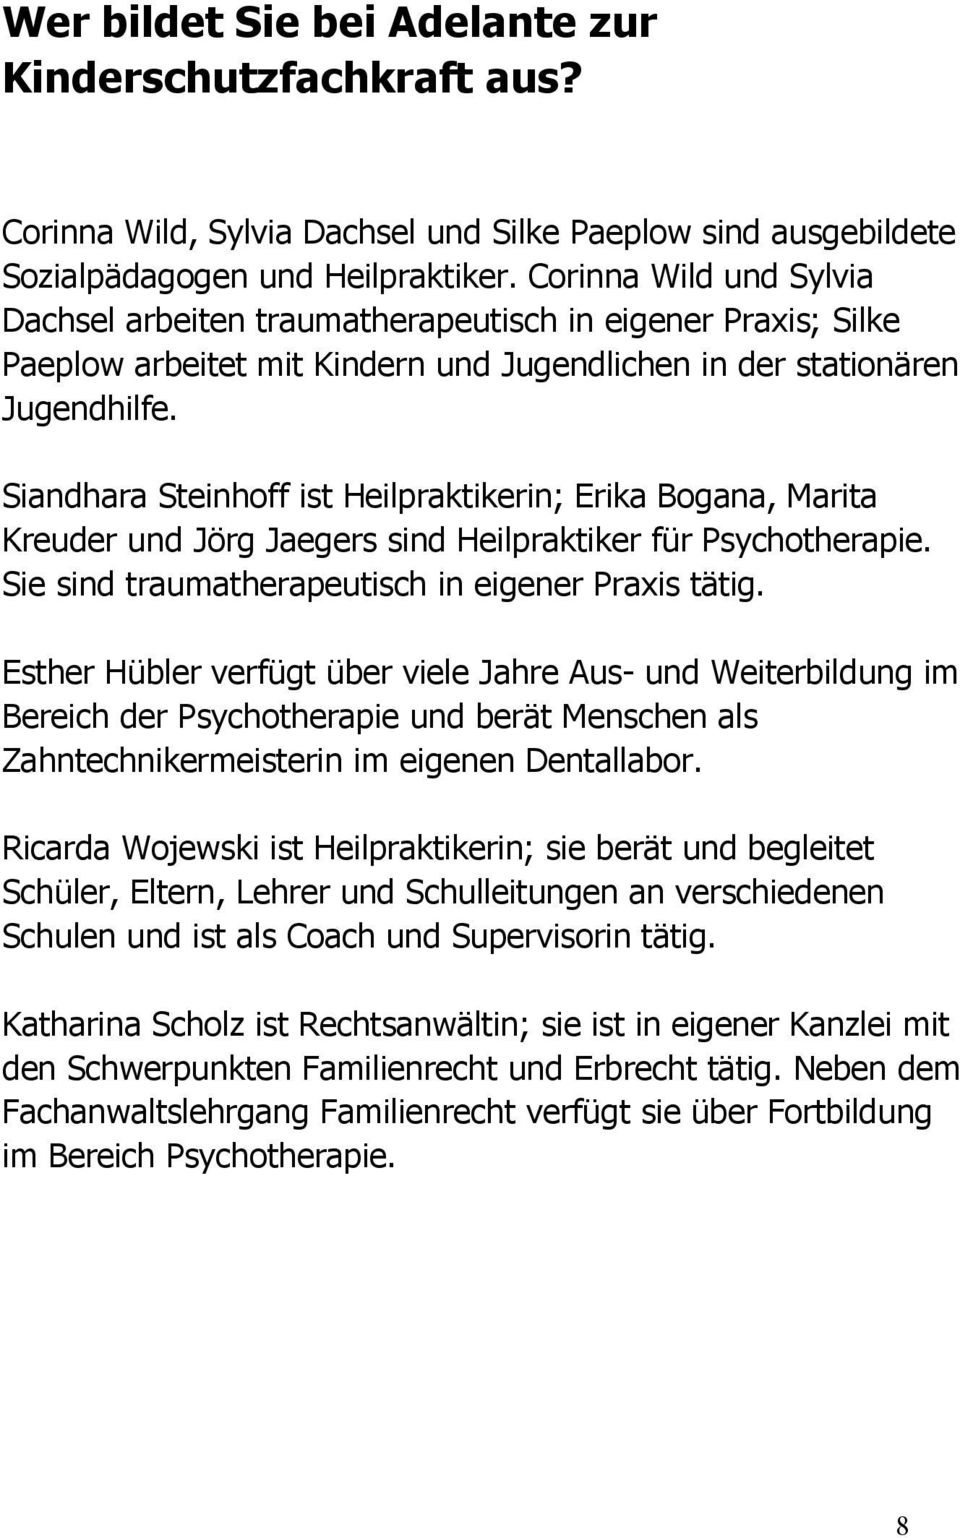 Siandhara Steinhoff ist Heilpraktikerin; Erika Bogana, Marita Kreuder und Jörg Jaegers sind Heilpraktiker für Psychotherapie. Sie sind traumatherapeutisch in eigener Praxis tätig.